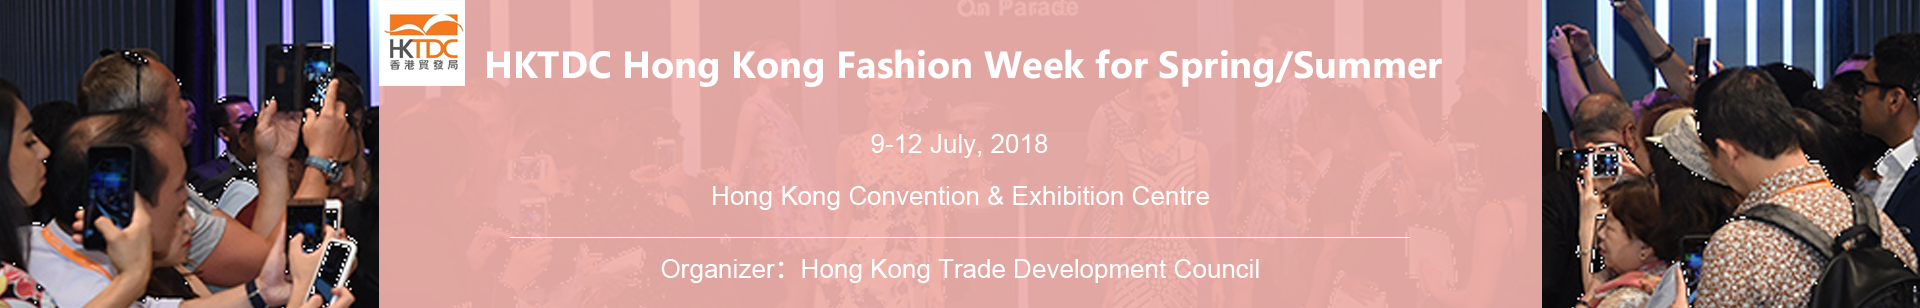 Hong Kong Fashion Week for Spring/Summer